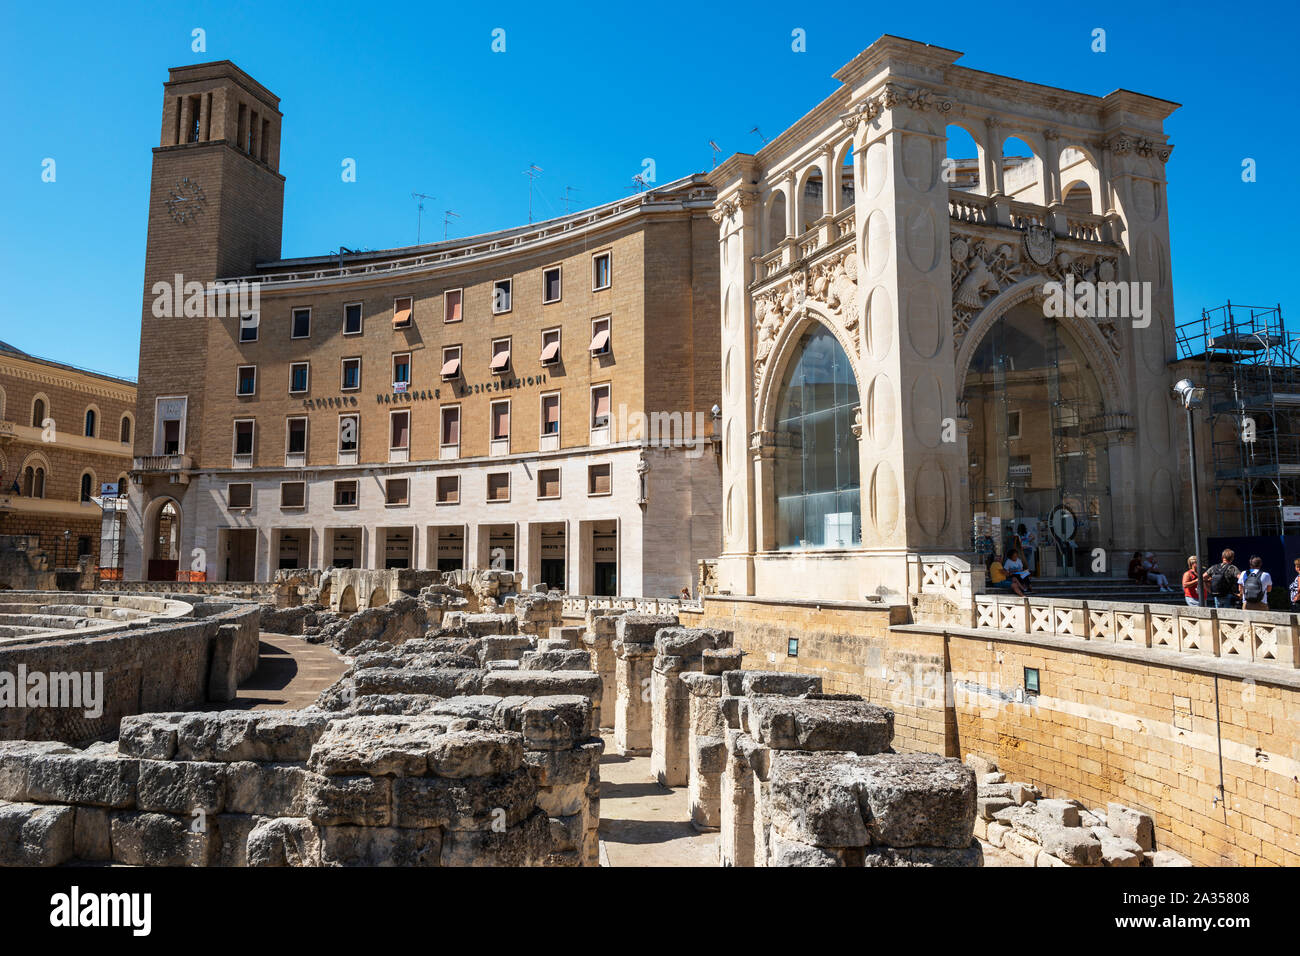 Roman amphitheatre (Anfiteatro romano di Lecce) and Sedile Palace (Palazzo de Seggio) in Piazza Sant'Oronzo in Lecce, Apulia (Puglia), Southern Italy Stock Photo